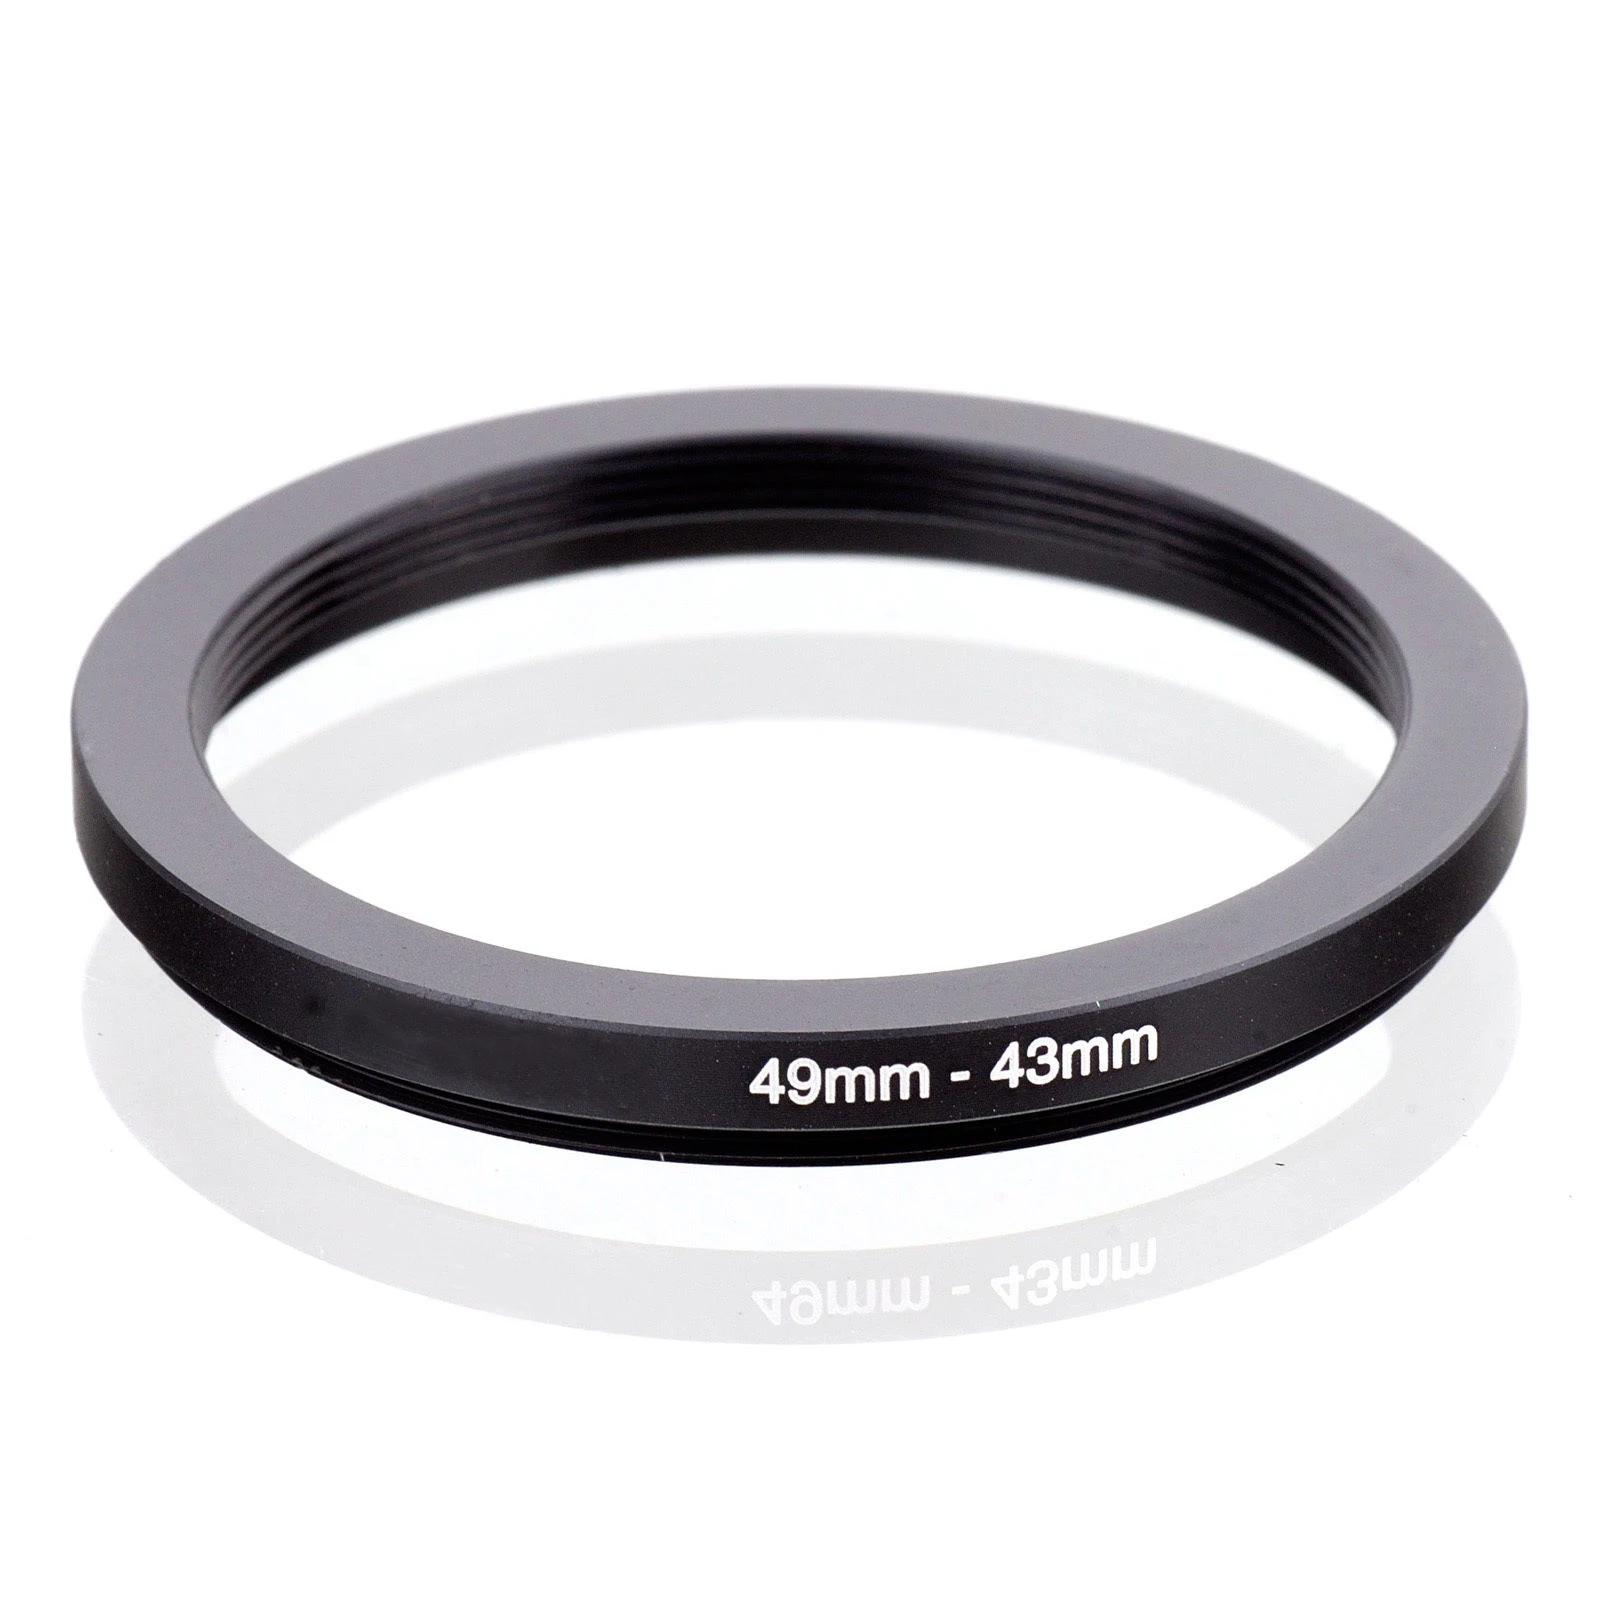 Noir vhbw Adaptateur Bague Step-up diamètre de 43mm vers 49mm pour Objectif Appareil Photo Reflex numérique 